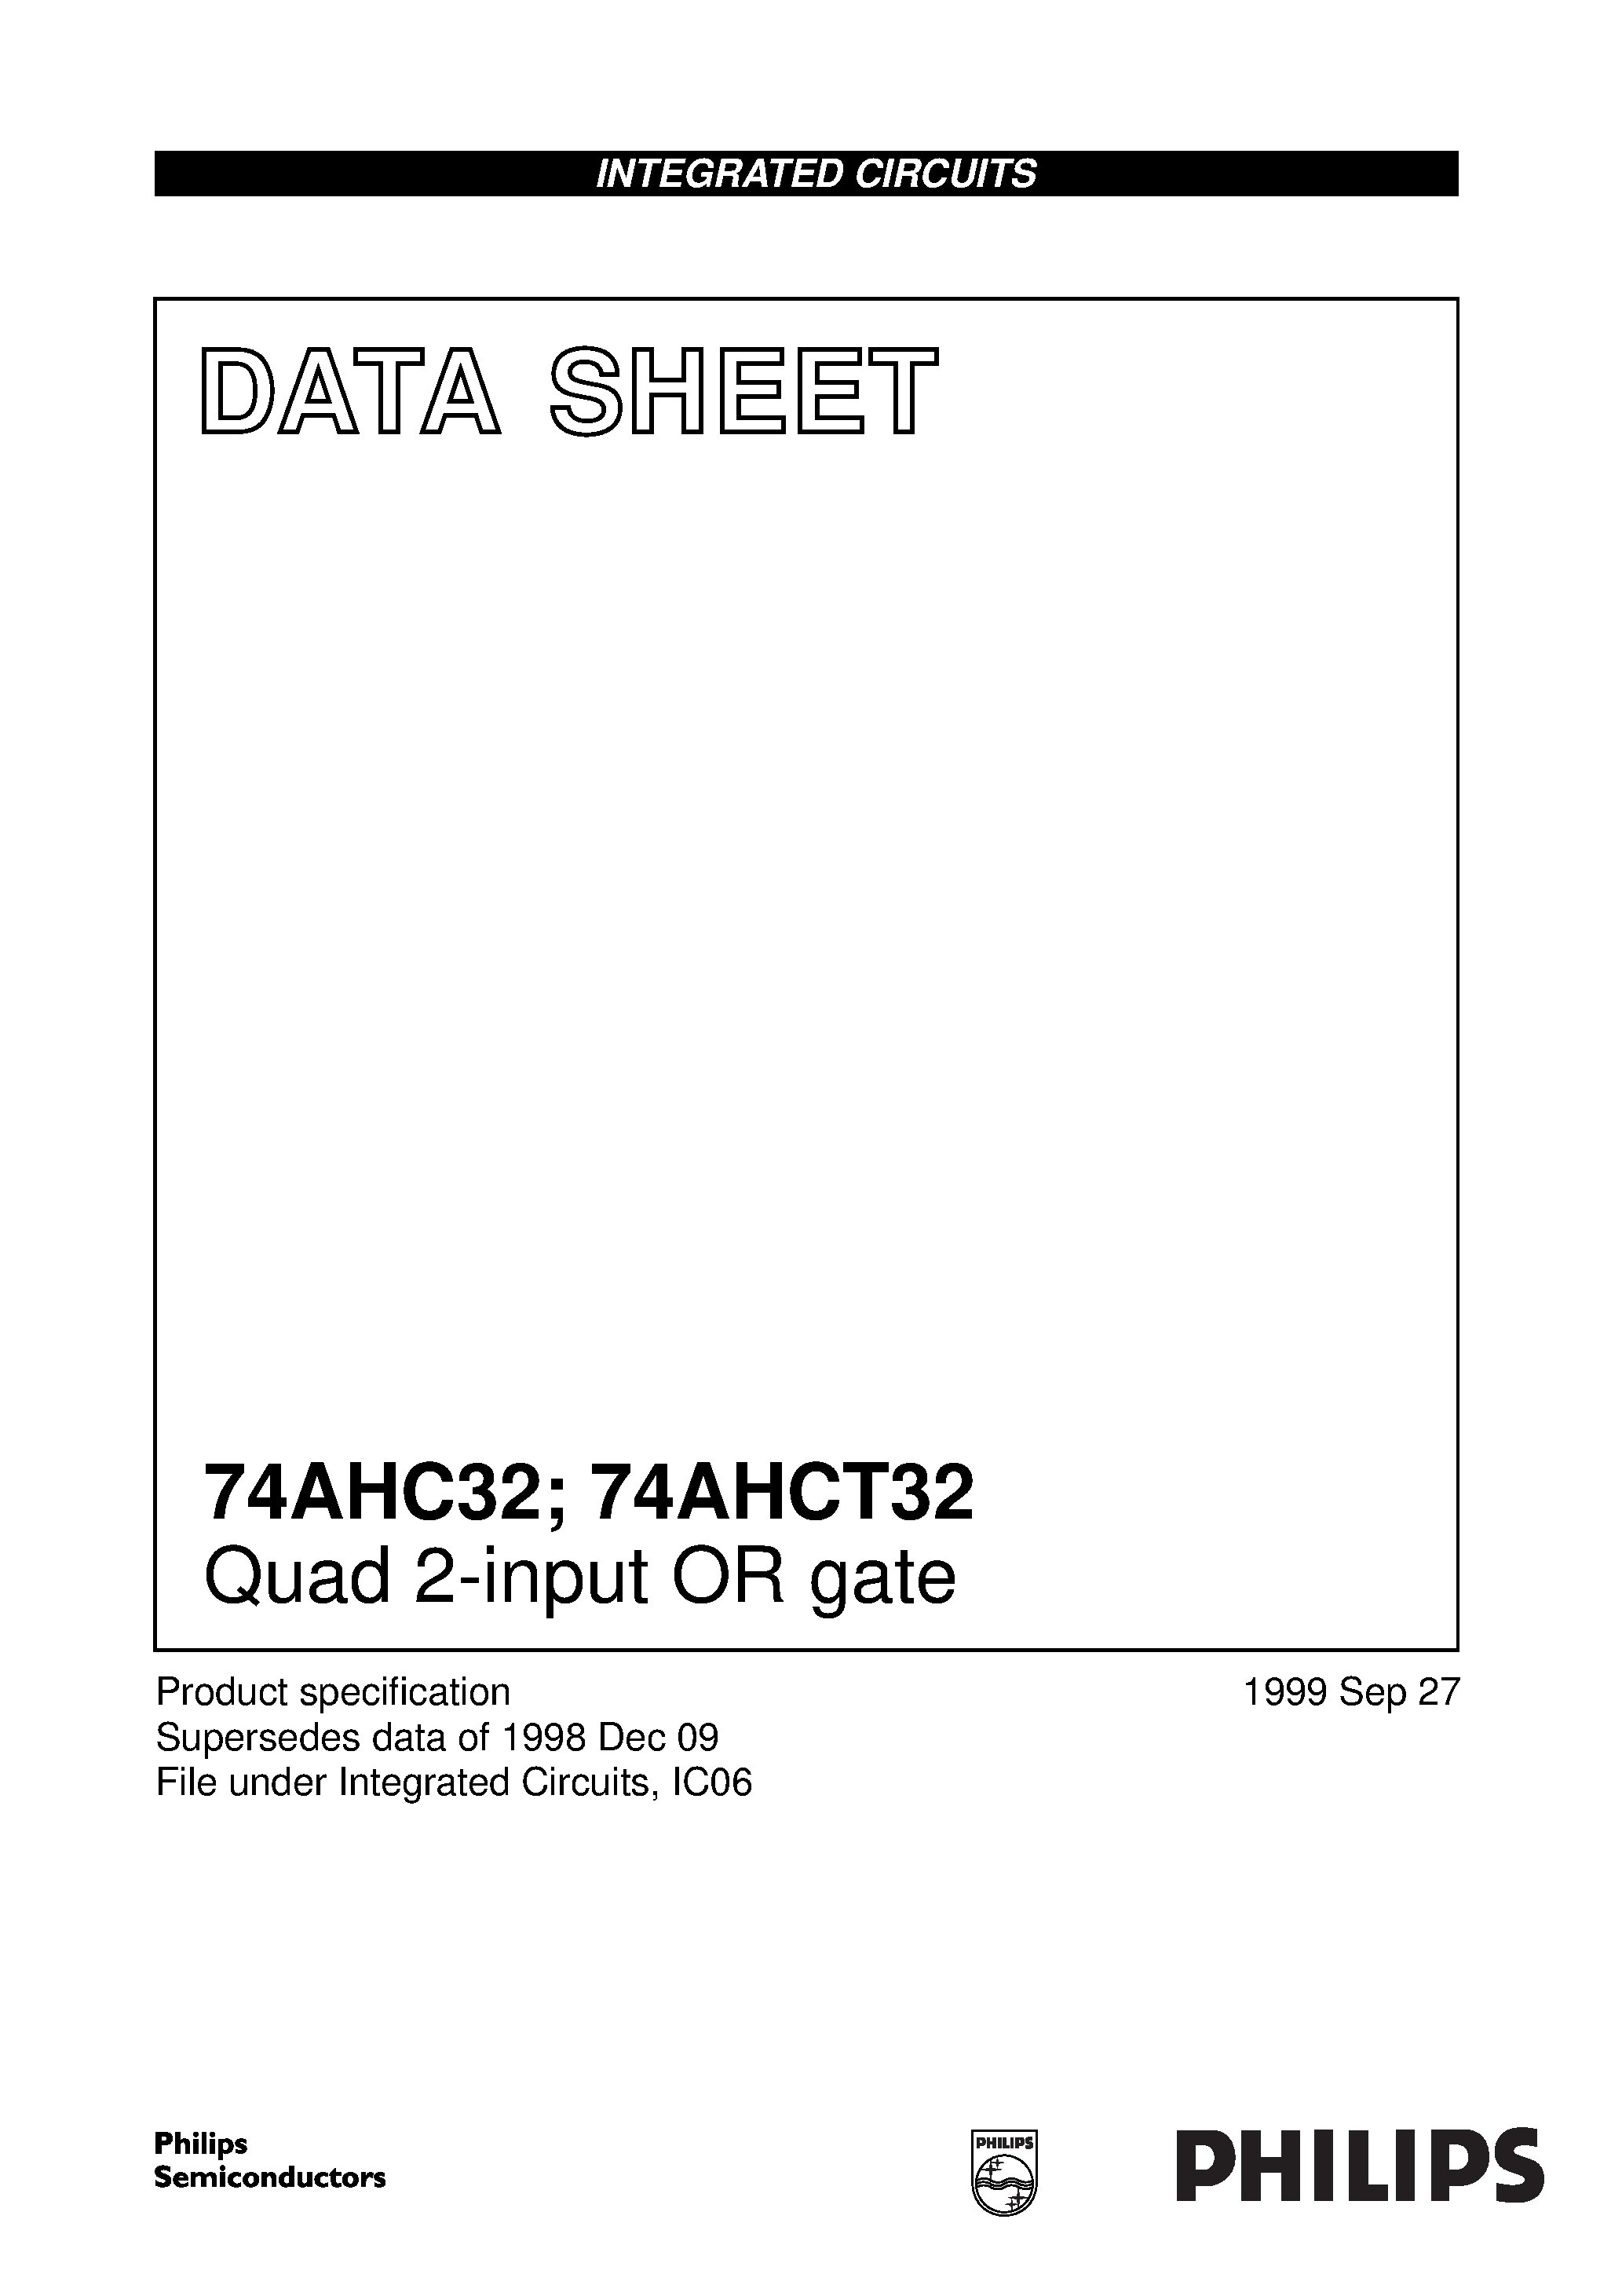 Даташит 74AHCT32 - Quad 2-input OR gate страница 1